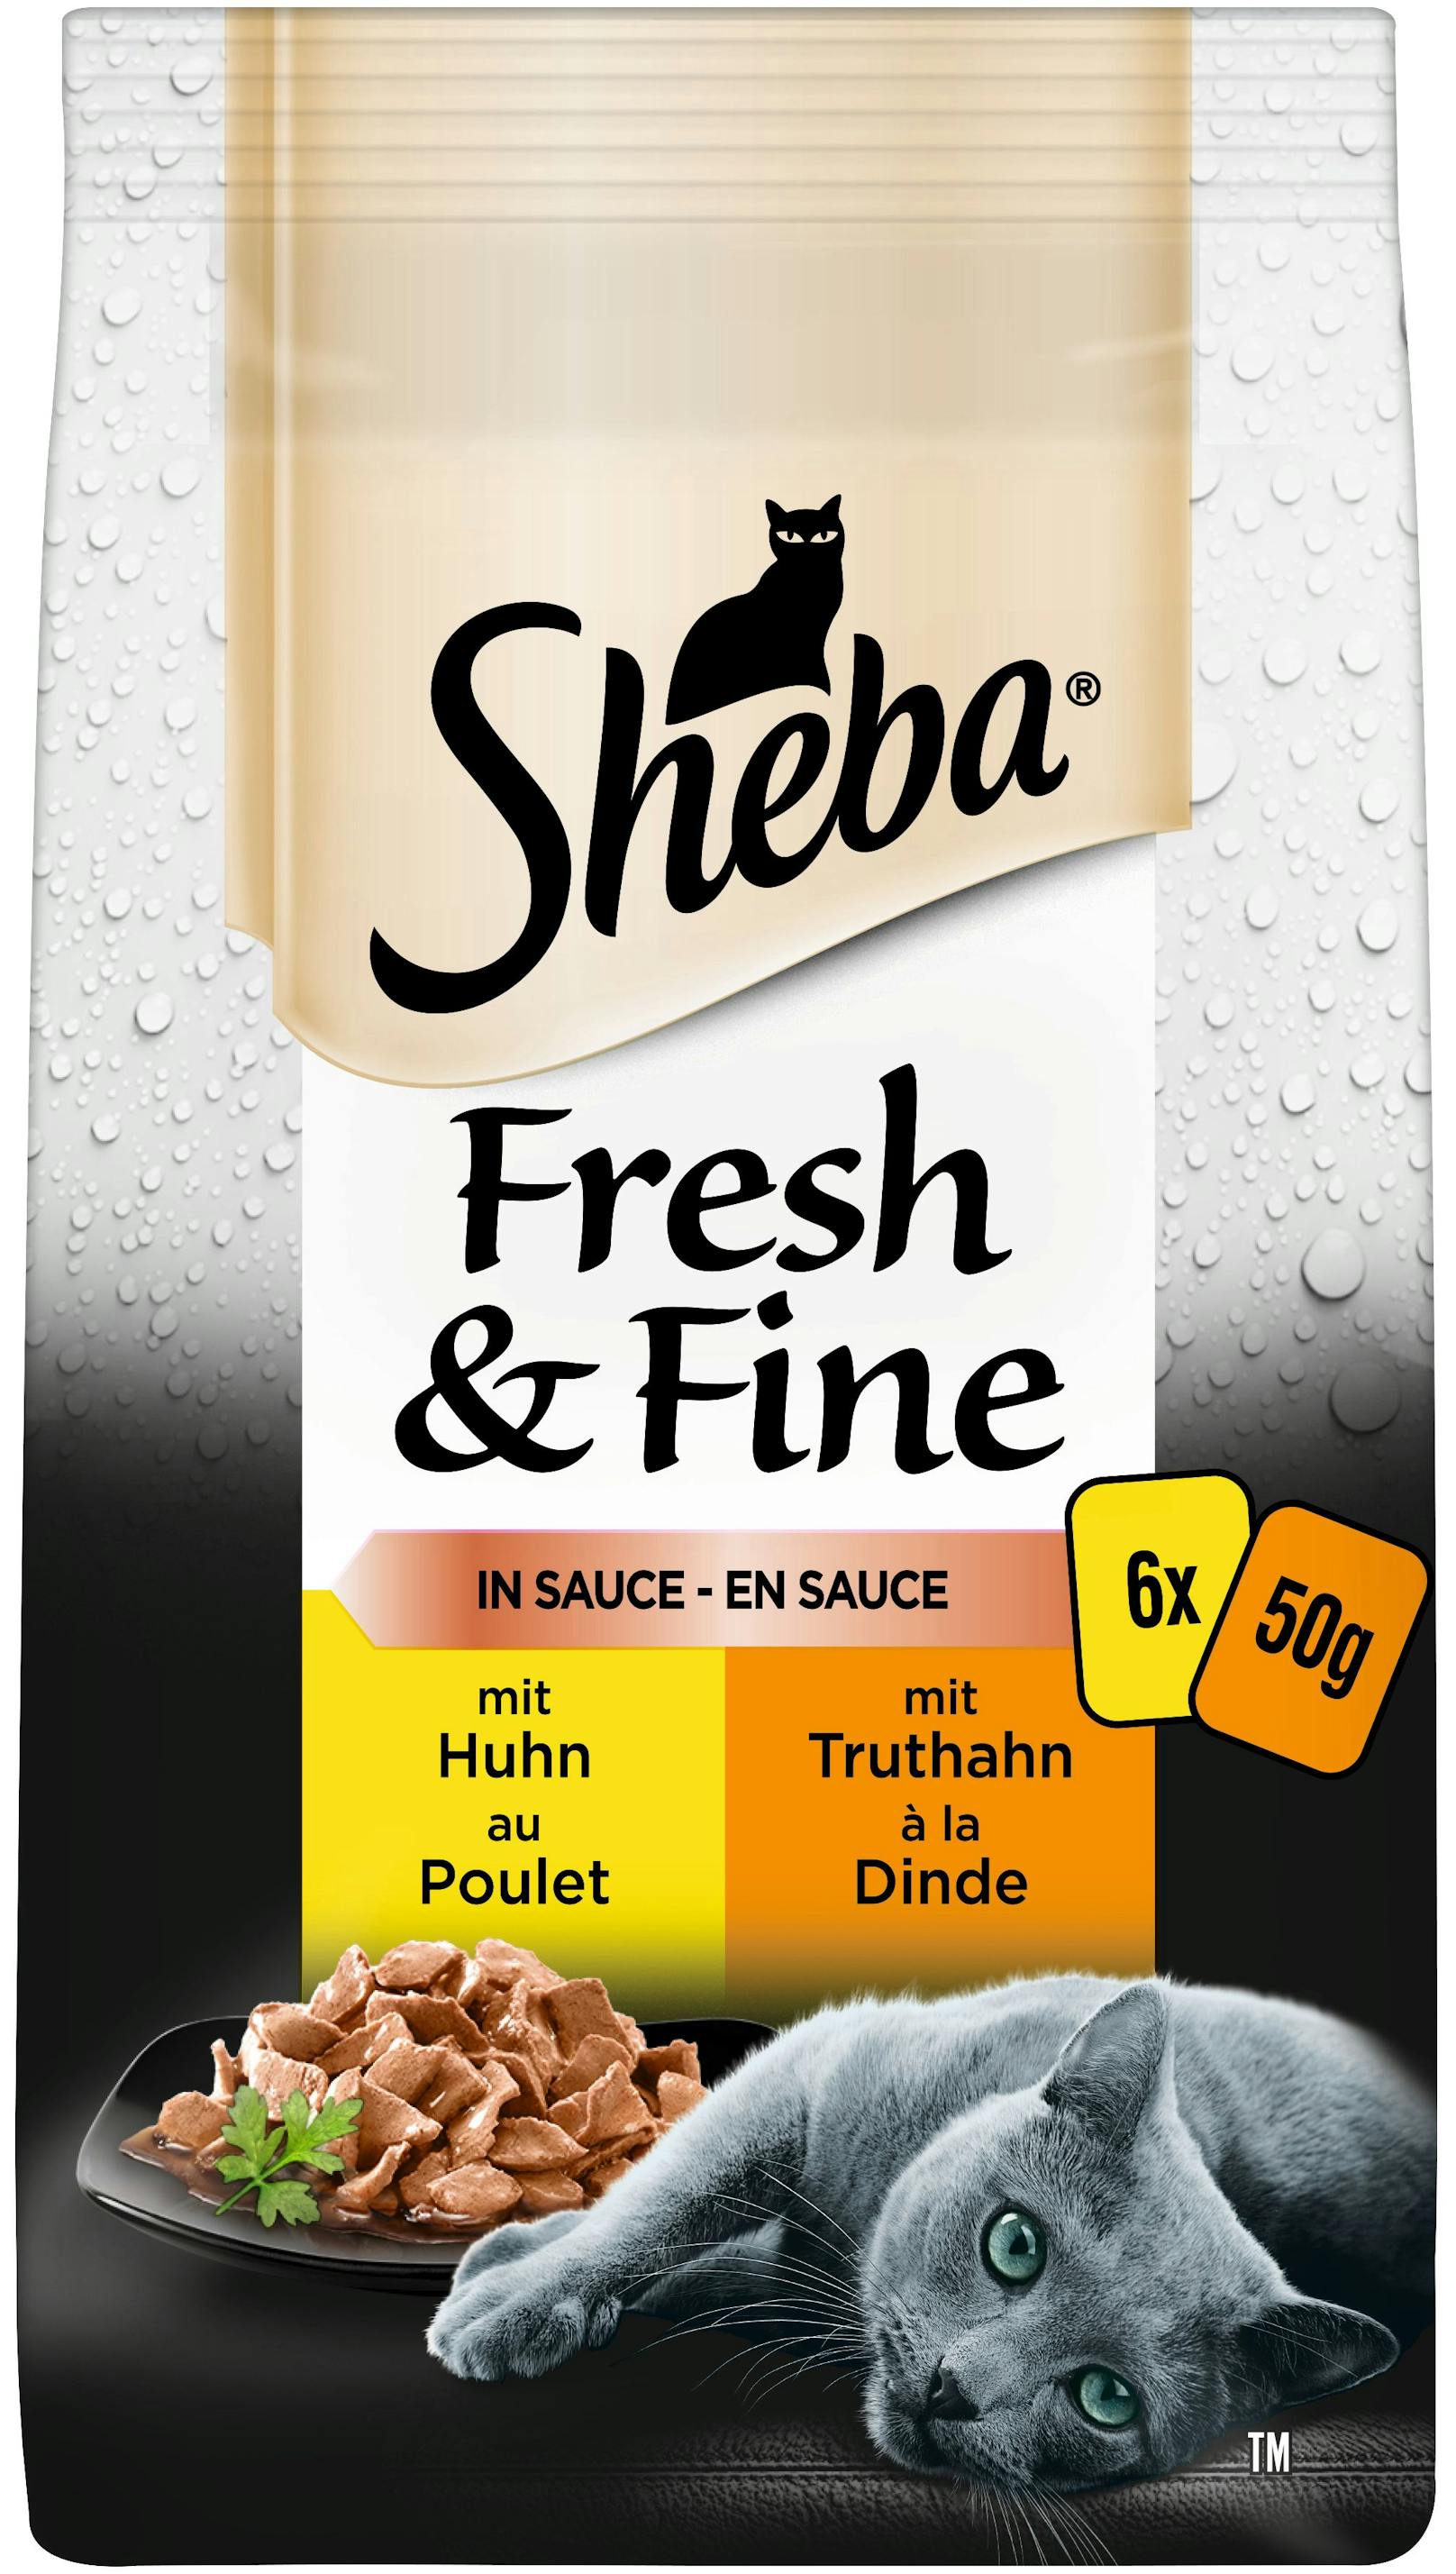 Gleich drei neue Futterboxen gibt es bald von "Sheba". 